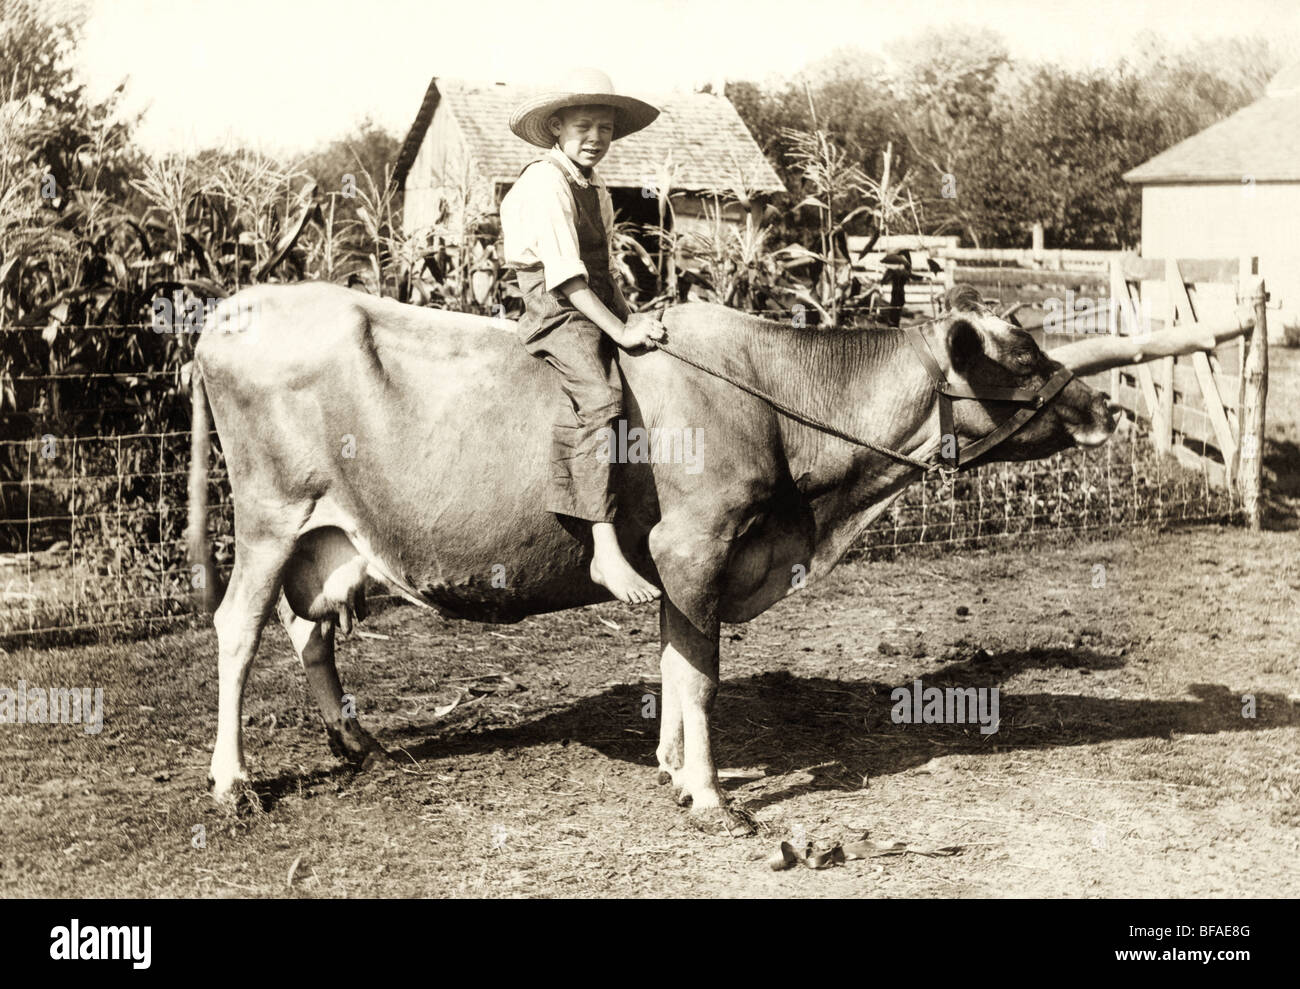 A piedi nudi Farm Boy vacca di equitazione Foto Stock